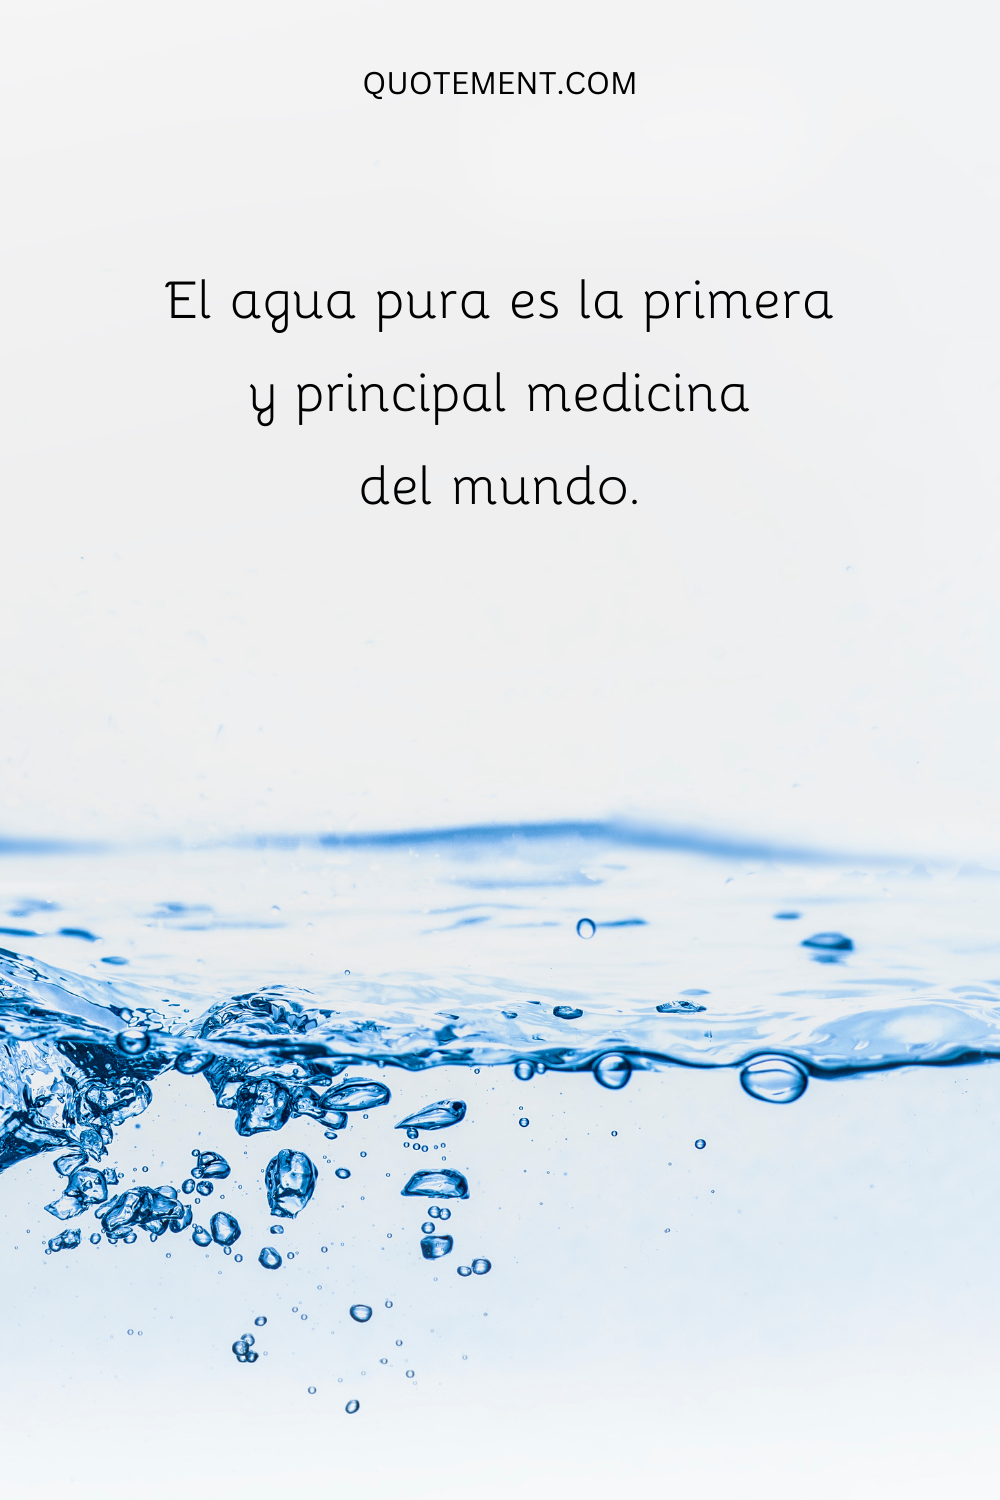 El agua pura es la primera y principal medicina del mundo.